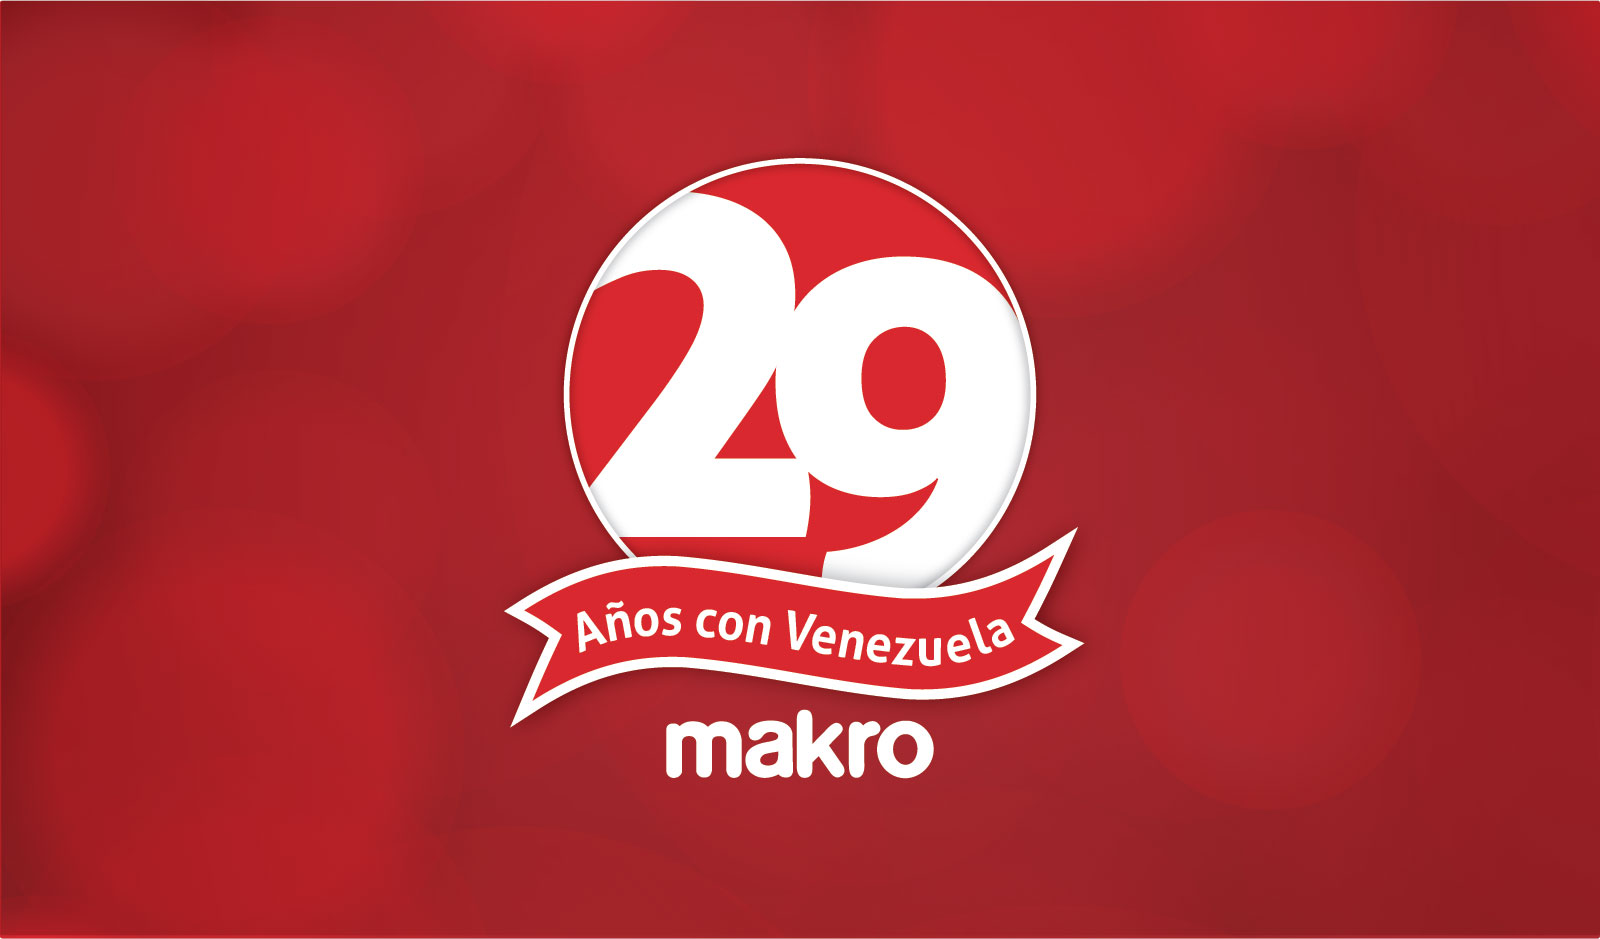 29 años de tradición familiar al servicio de todos los venezolanos